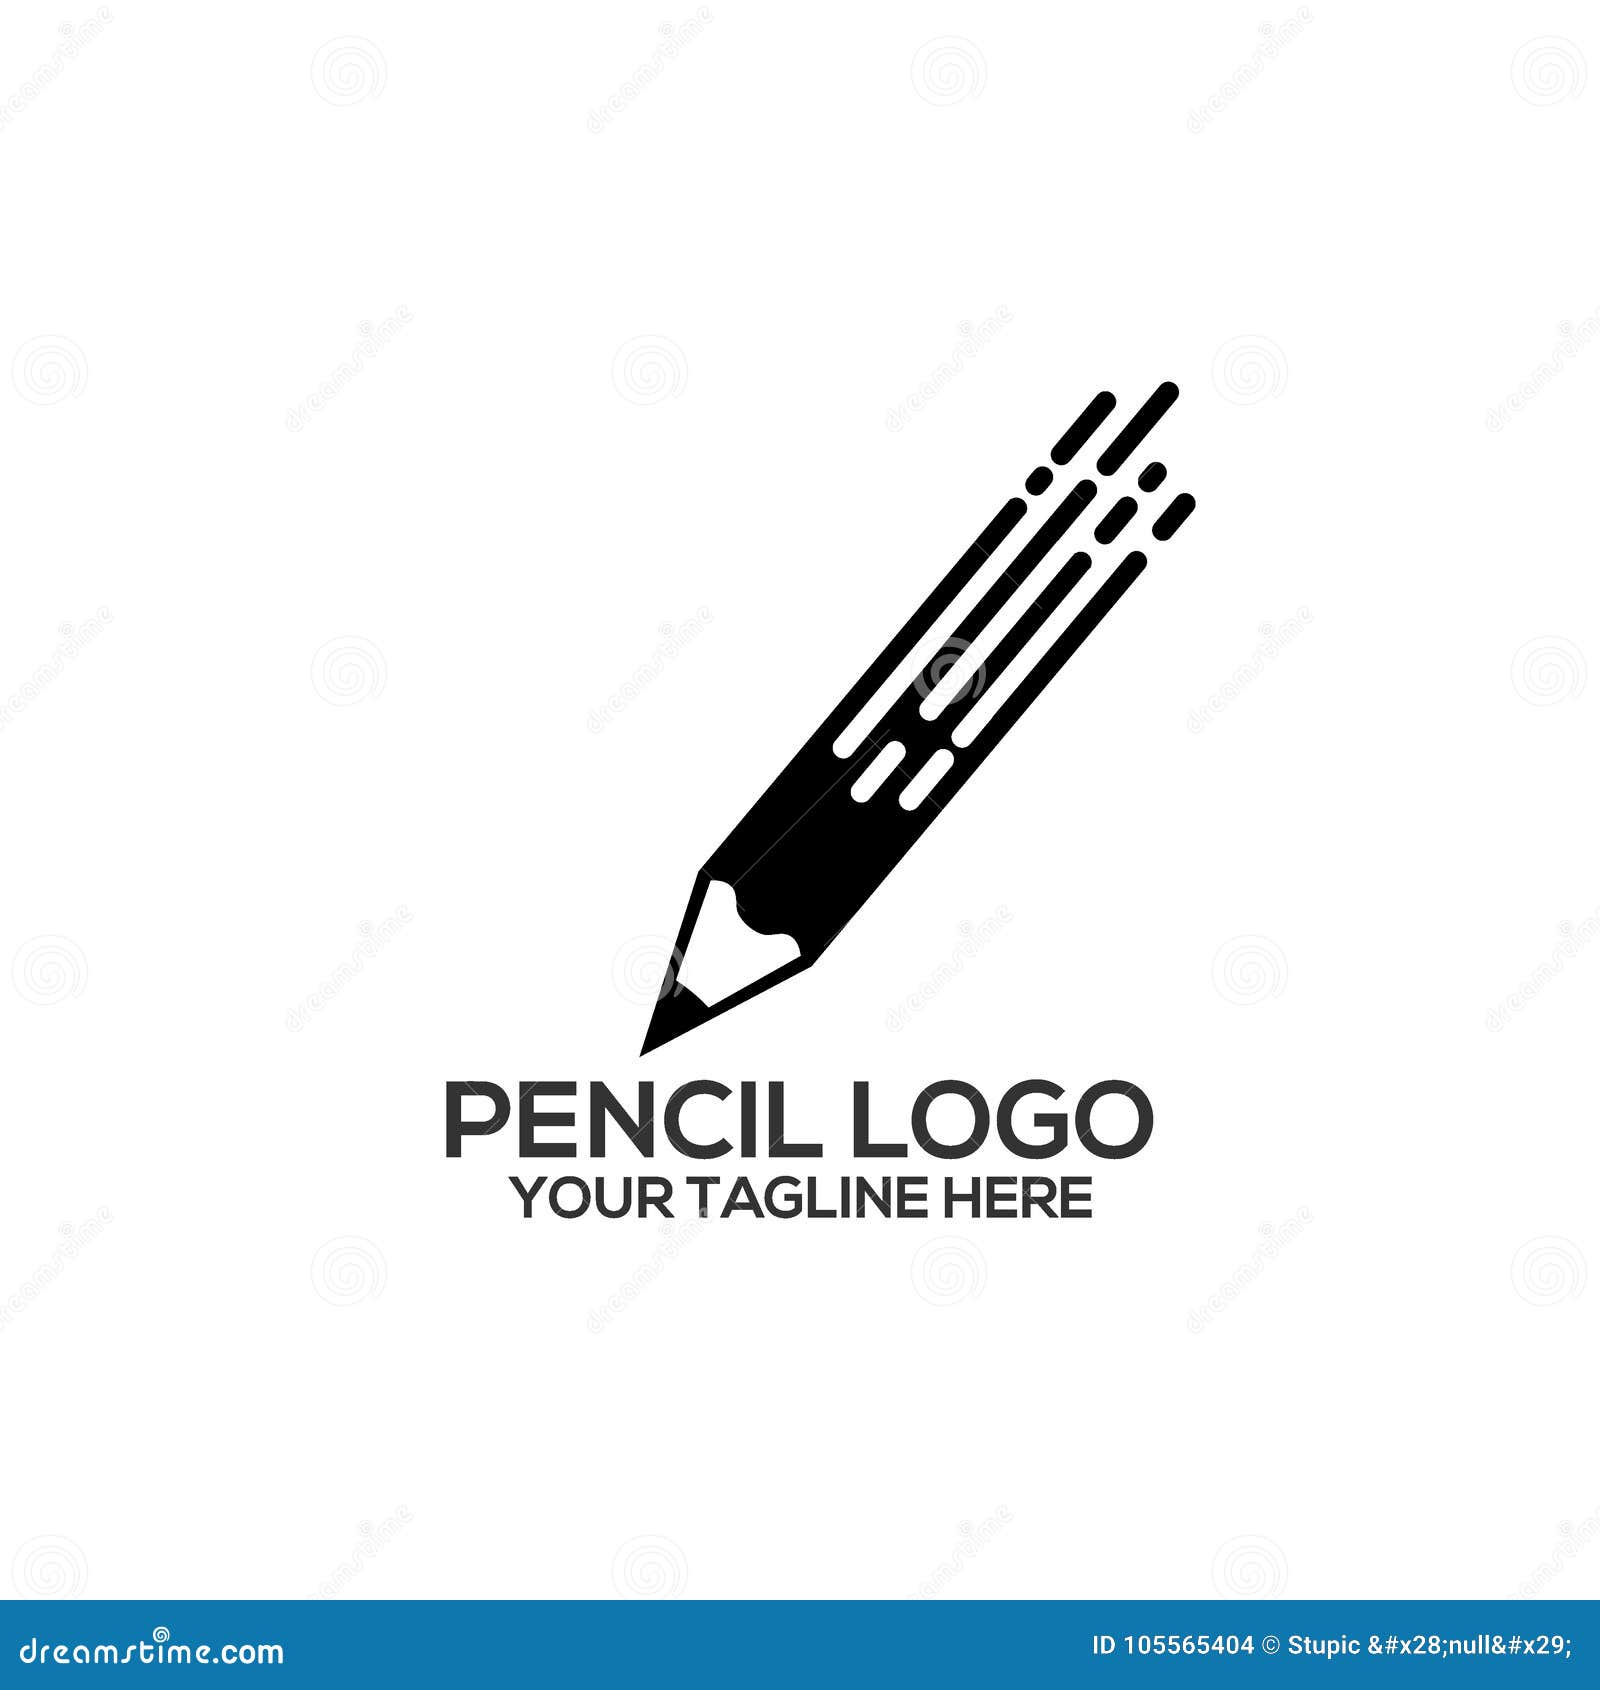 Free Pencil Logo Designs | DesignEvo Logo Maker